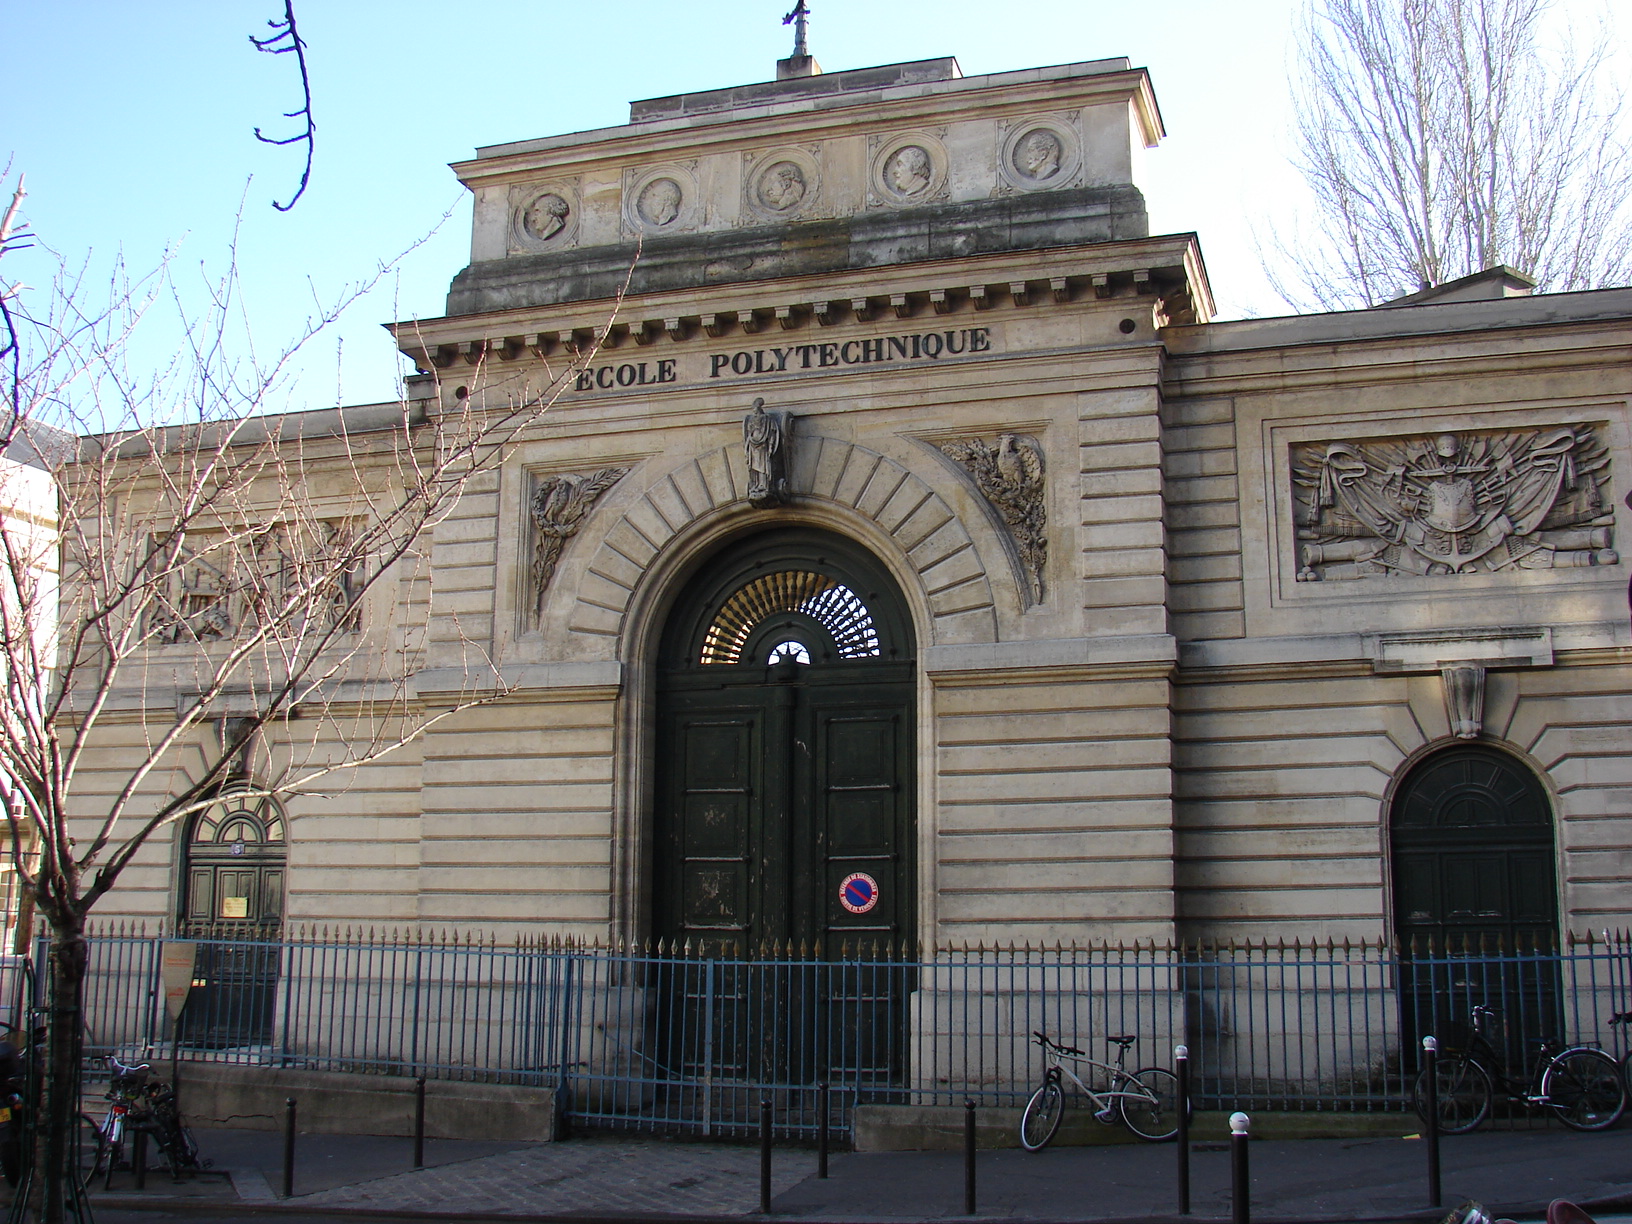 Ecole Polytechnique Entrance - Paris 5